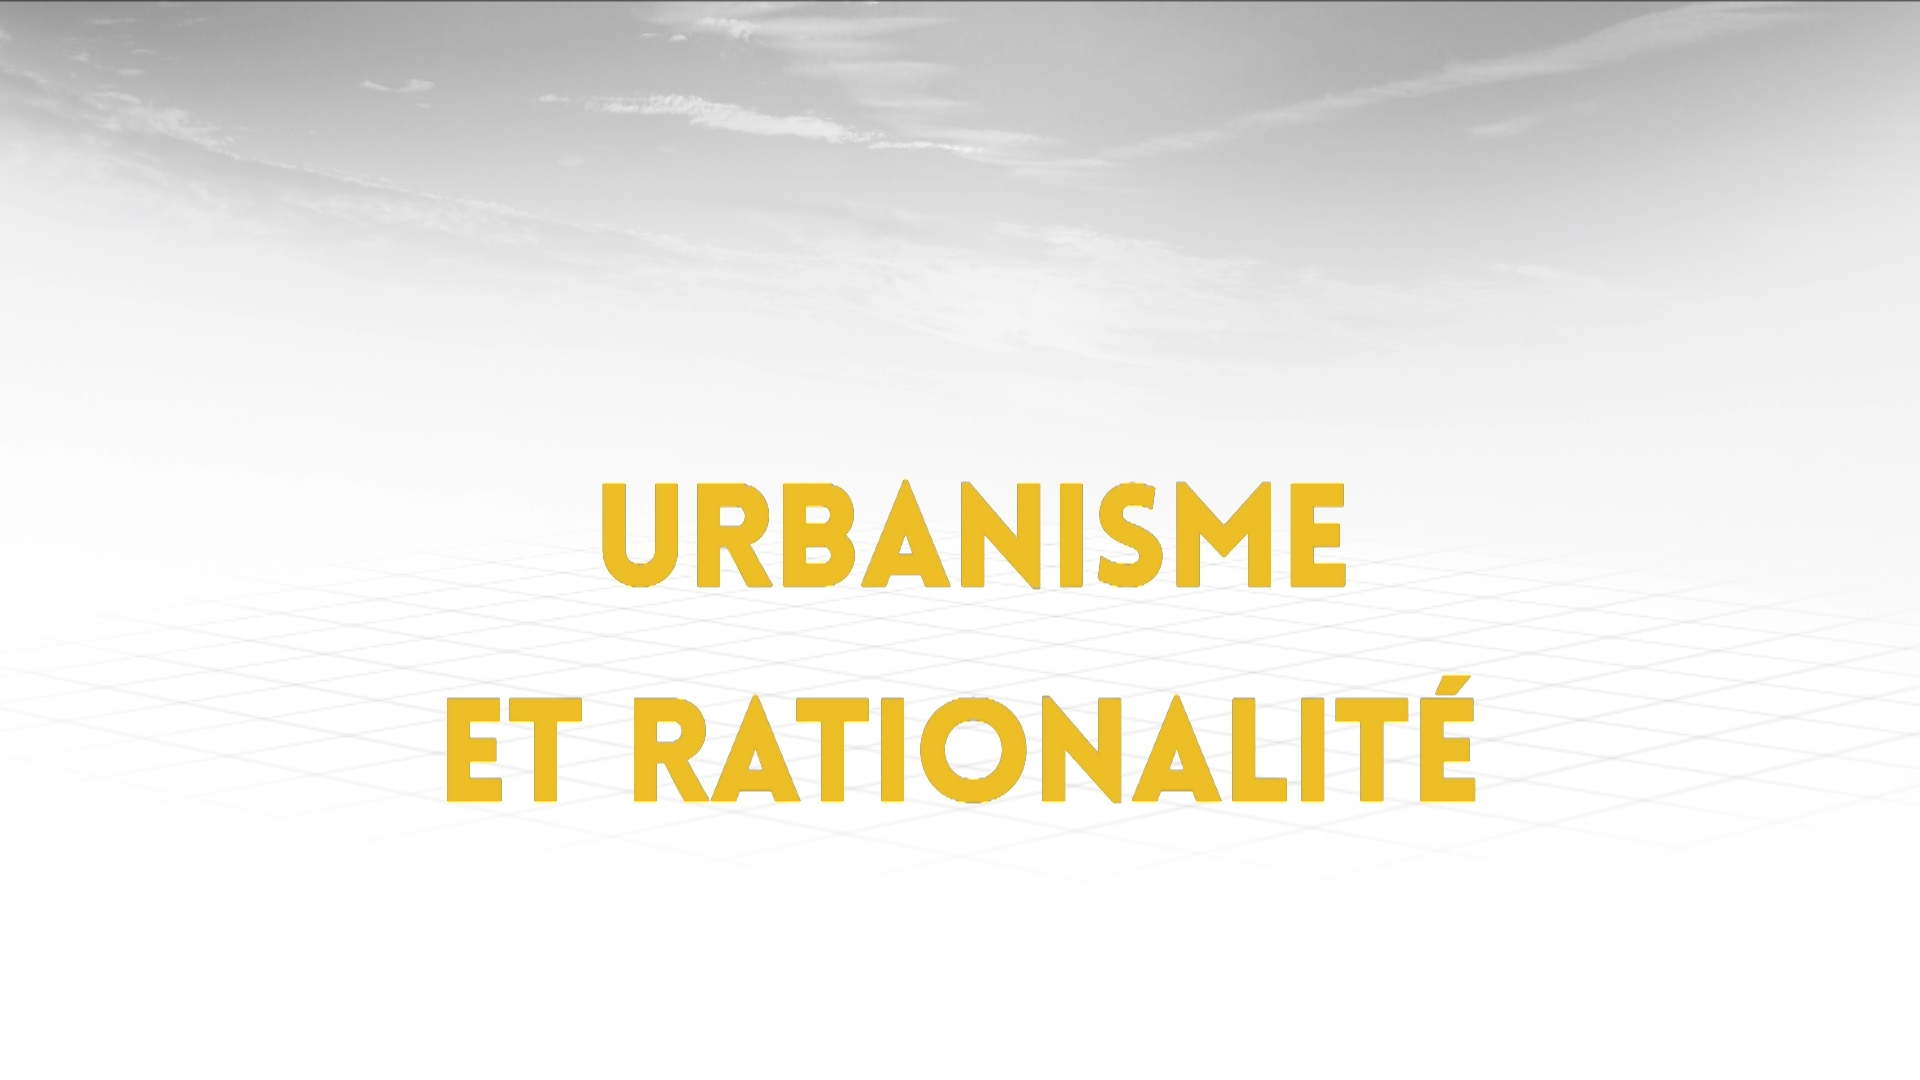 5.1 Urbanisme et rationalité